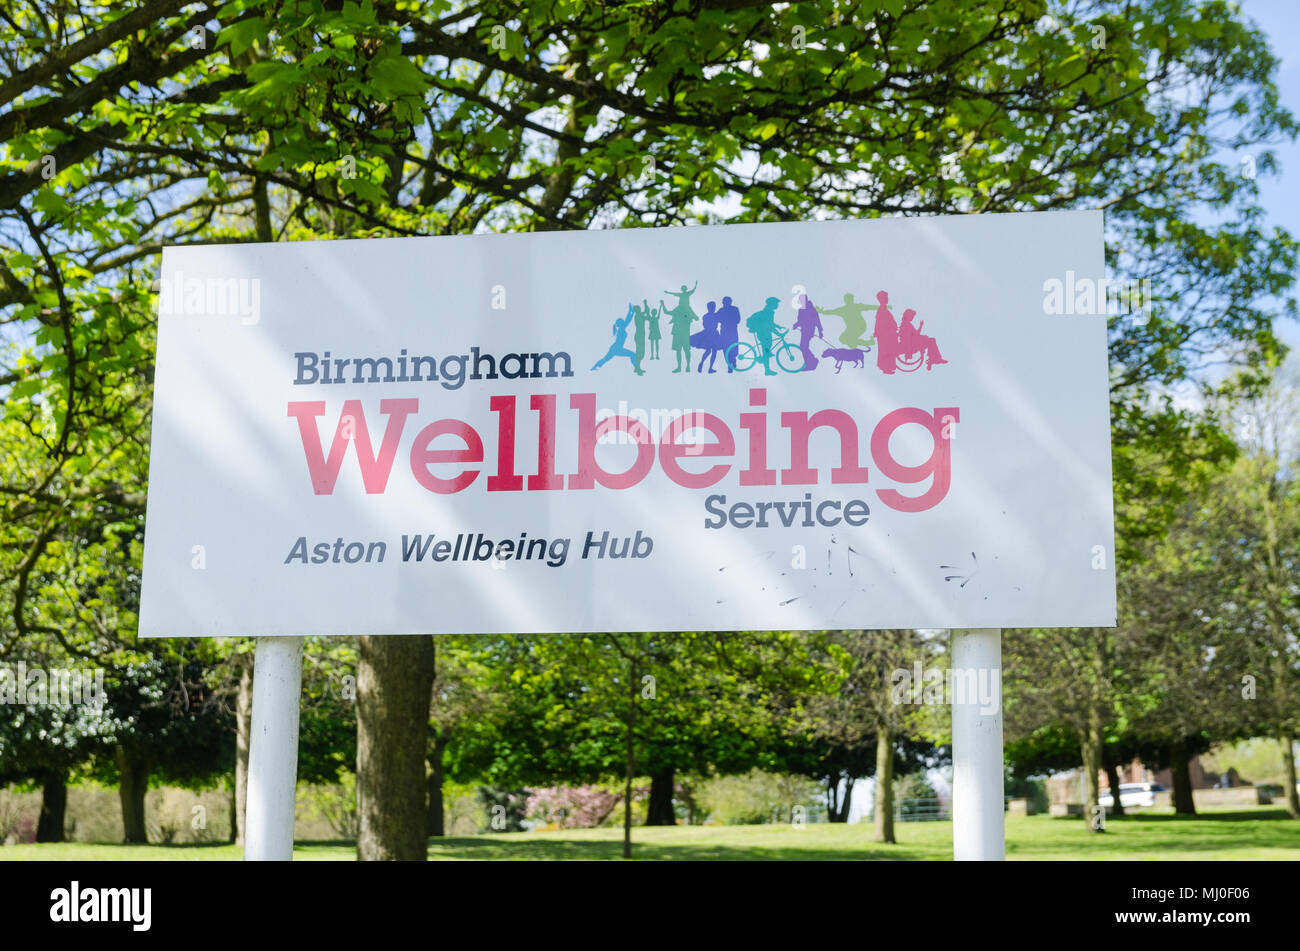 Unterschreiben Sie bei Aston Park in Birmingham Birmingham Werbung Wohlbefinden Service, es soll die örtlichen Bewohner mehr gesund werden Stockfoto